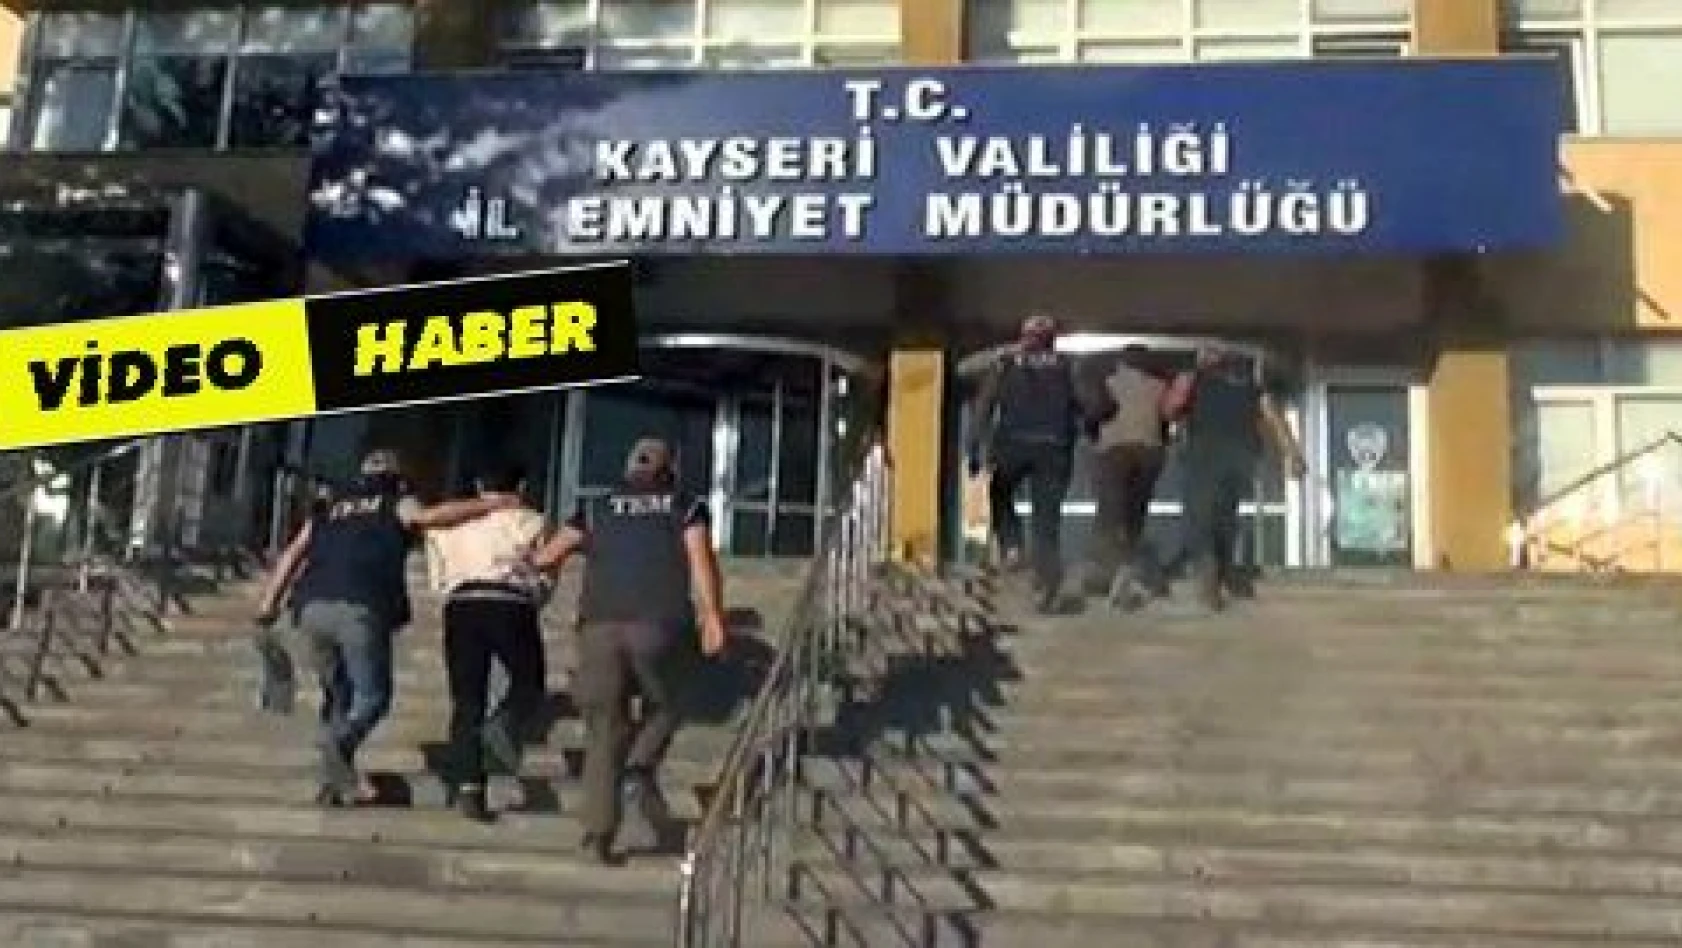 Kayseri'de DEAŞ adına faaliyet yürüten 3 kişi gözaltına alındı